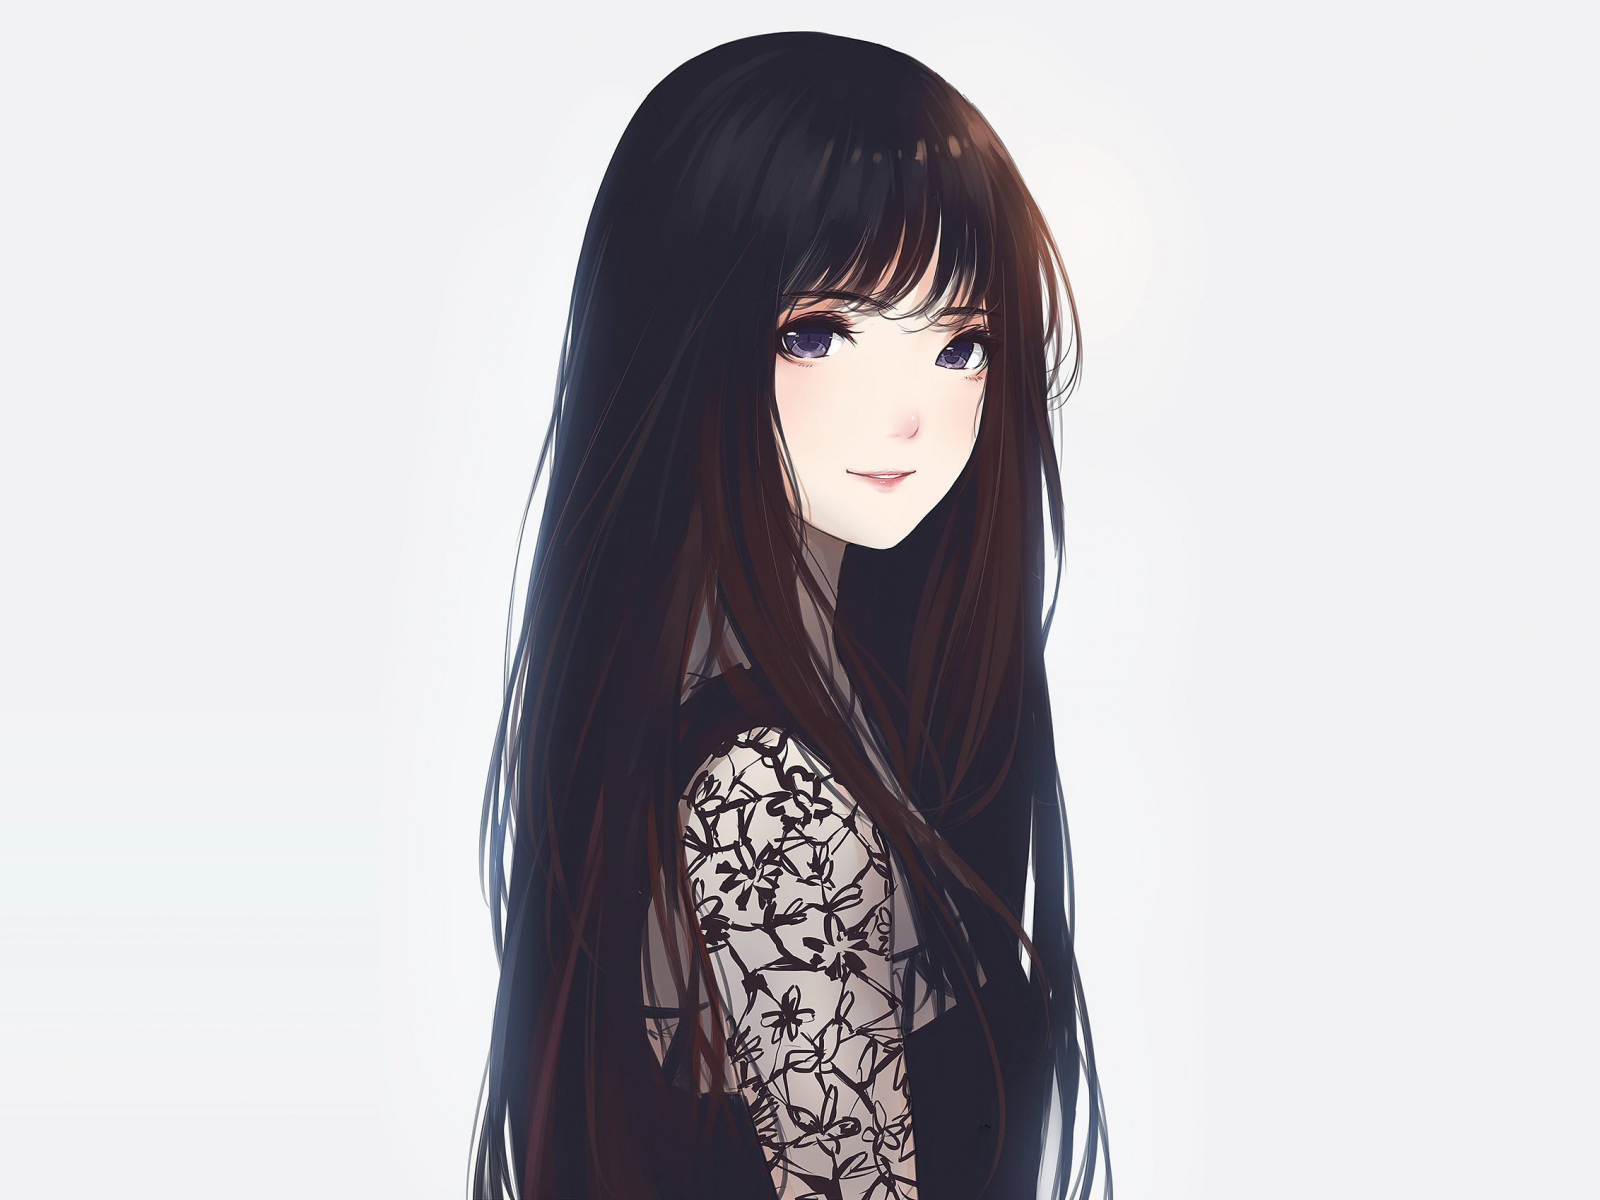 Beautiful Anime Girl With Wavy Hair